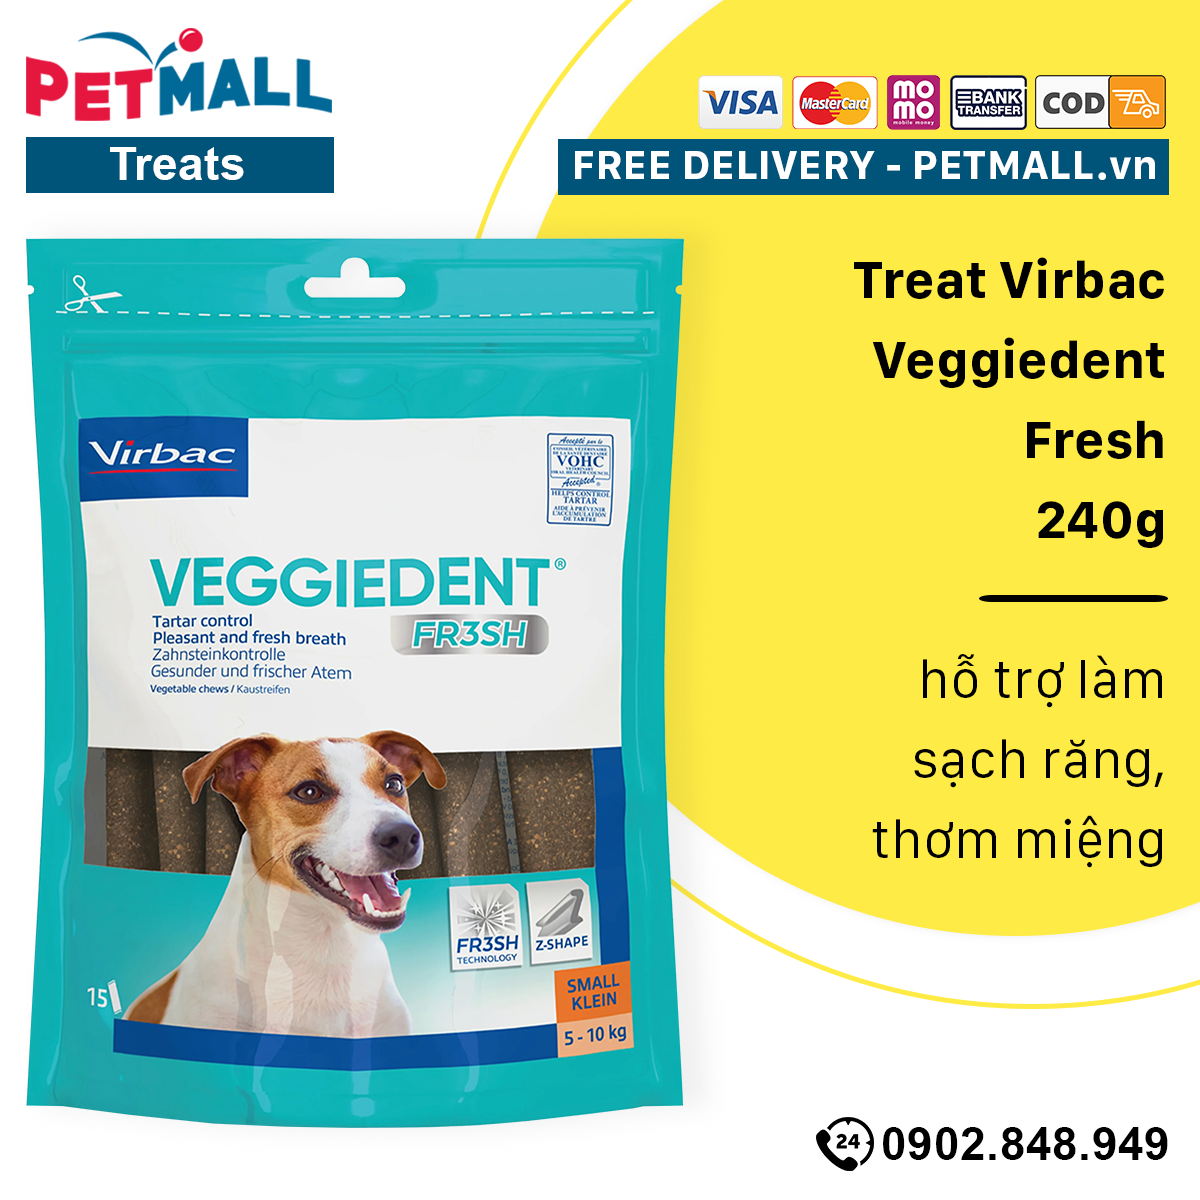 HCMTreat Virbac Veggiedent Fresh 240g - hỗ trợ làm sạch răng thơm miệng